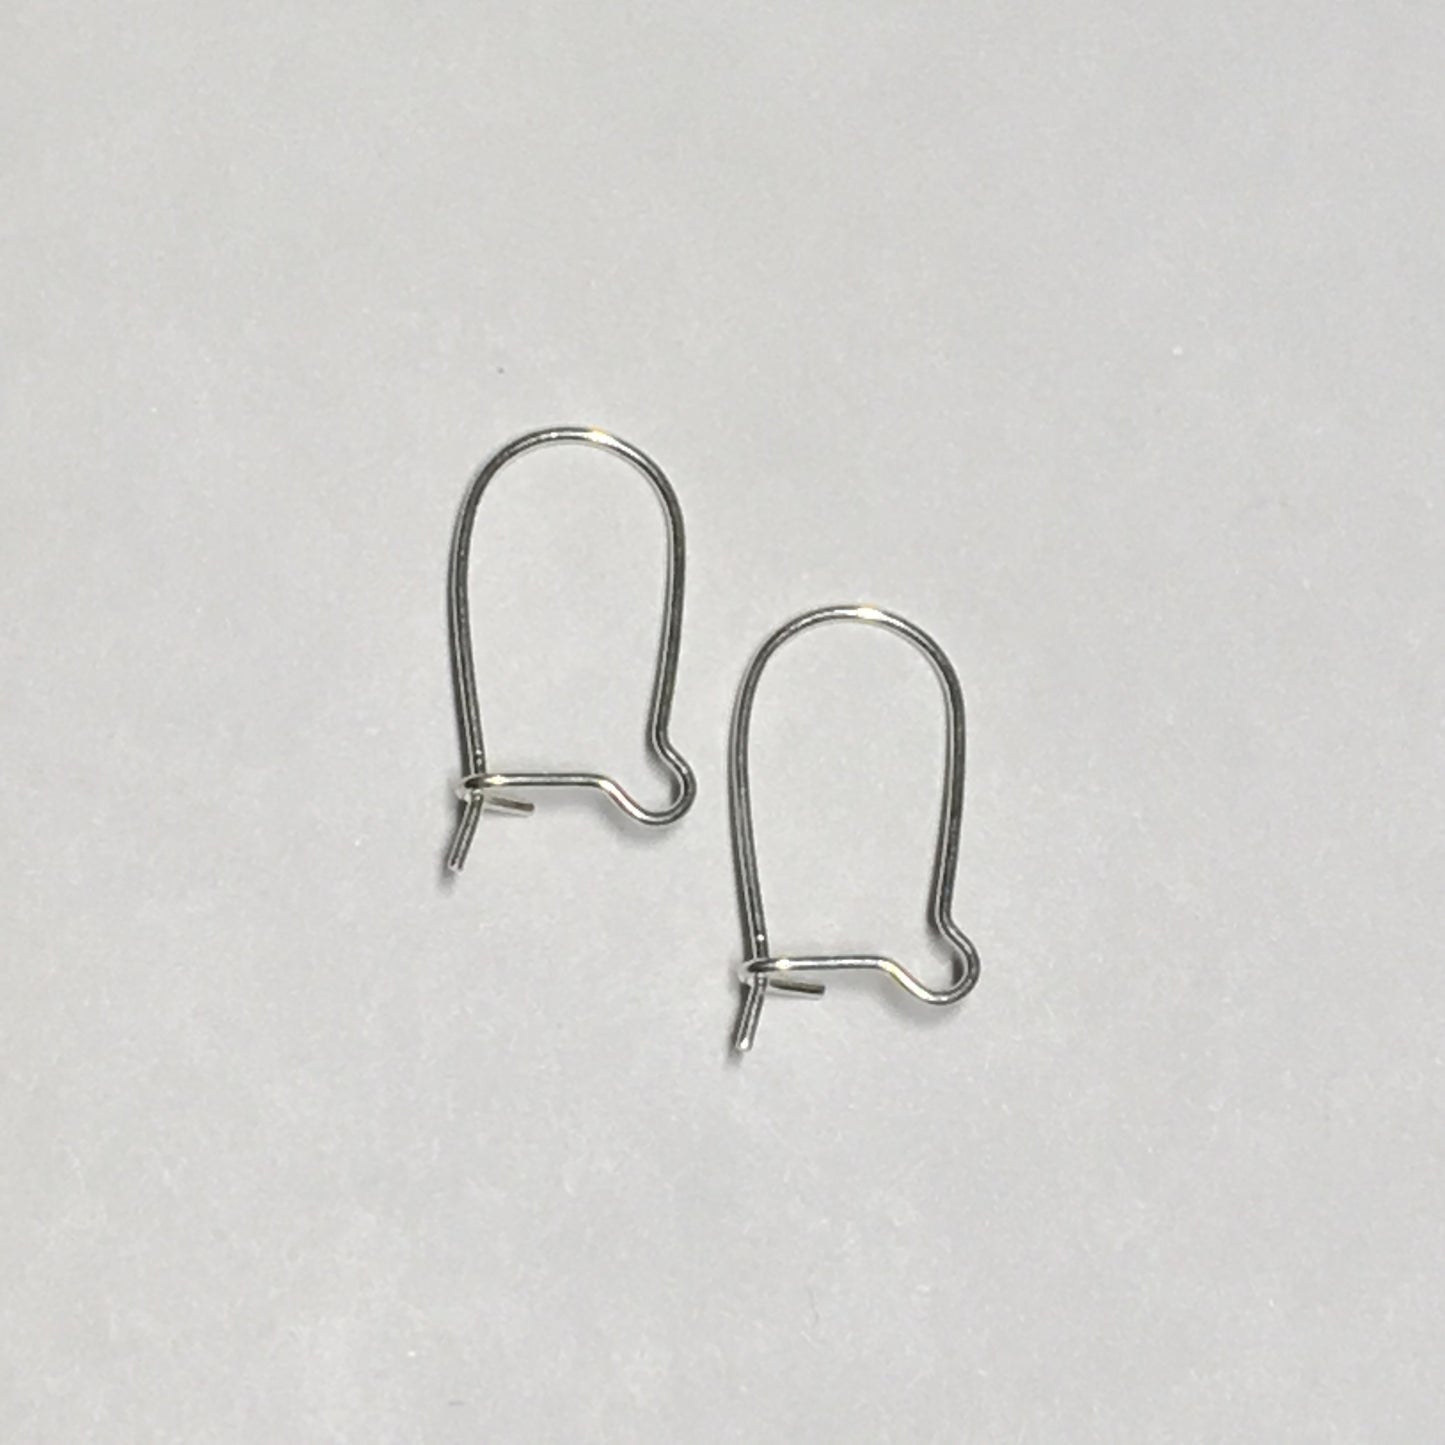 22-Gauge 16 mm Silver Kidney Ear Wires - 1 or 5 Pair